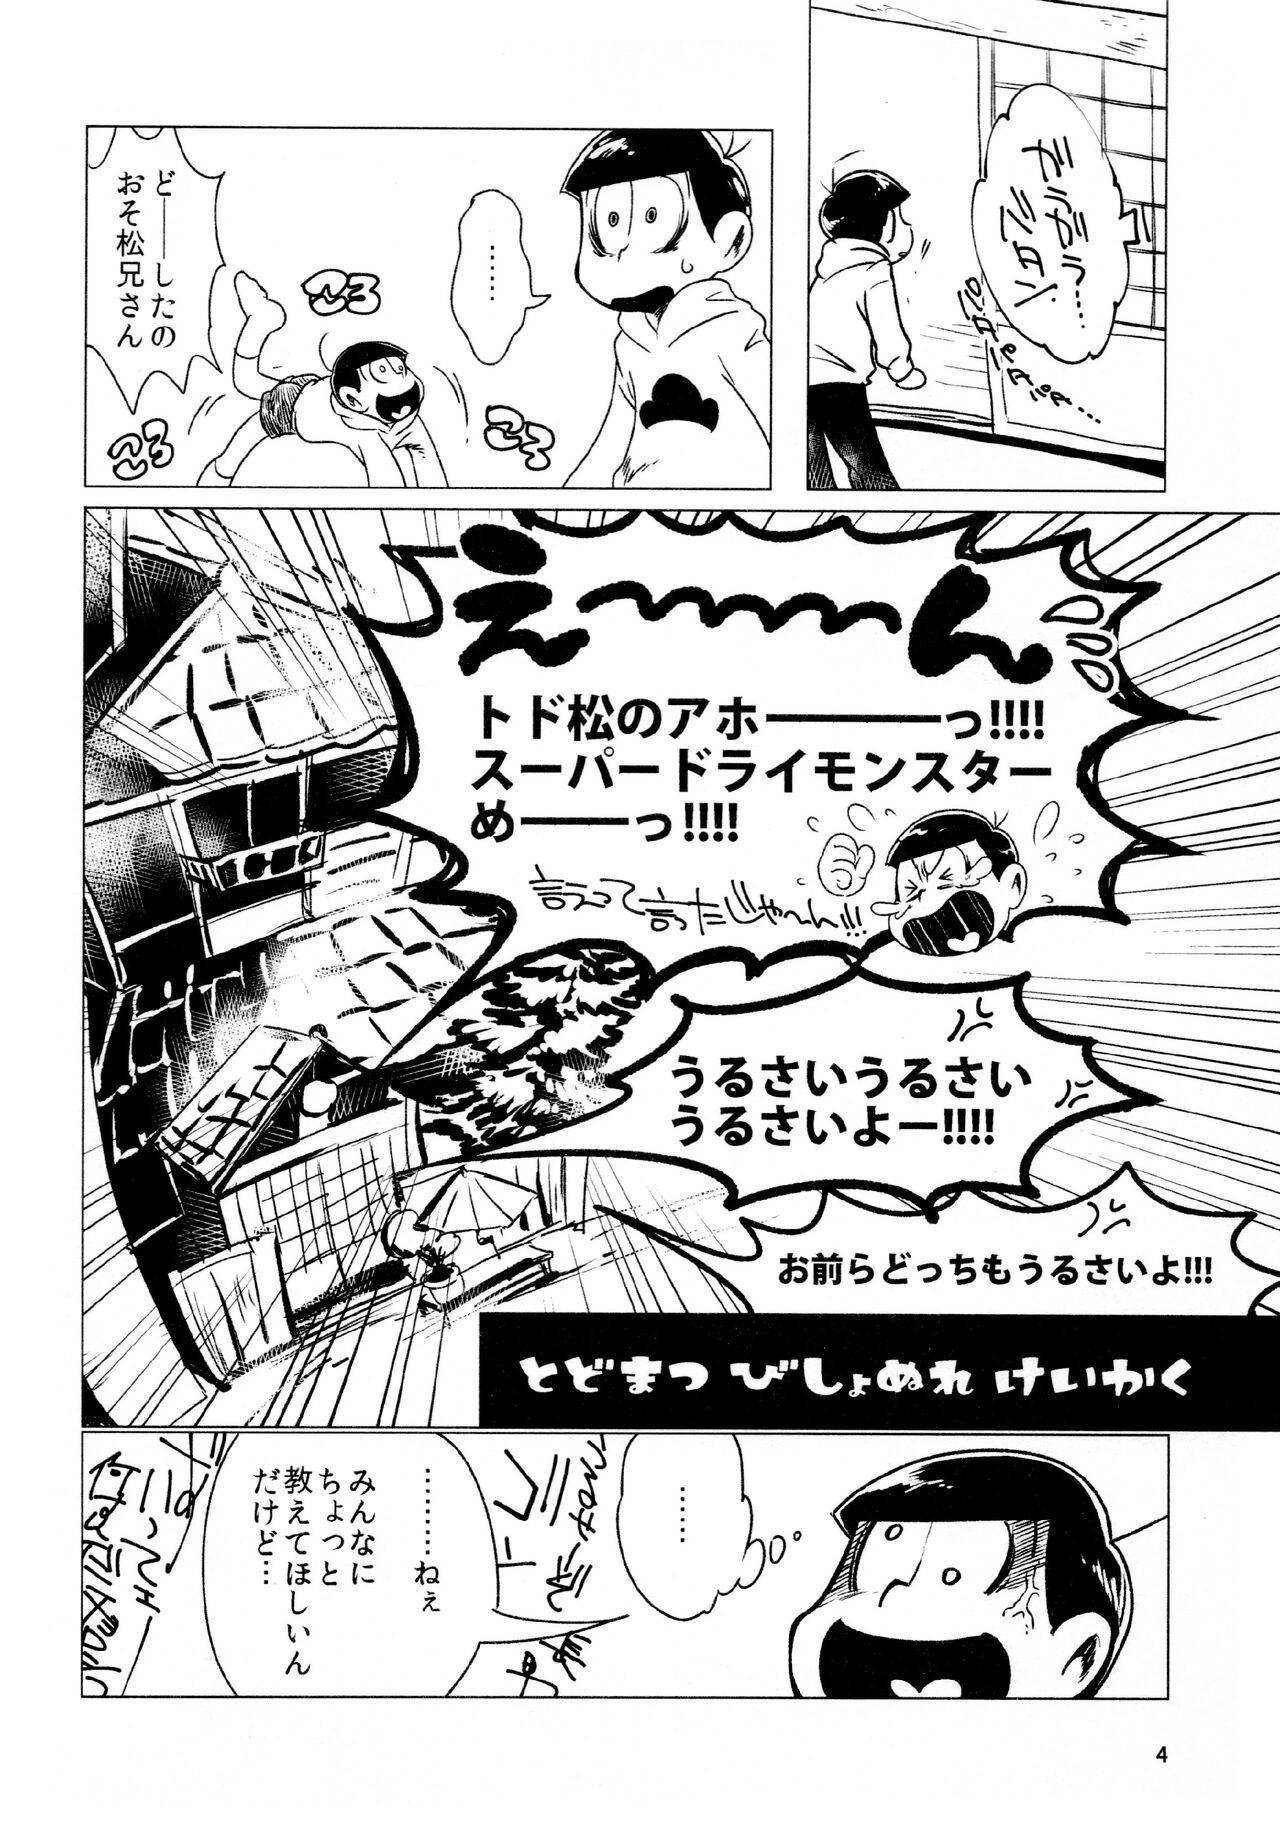 Piercing todomatsu bishi yonurekeikaku - Osomatsu-san Cojiendo - Page 4